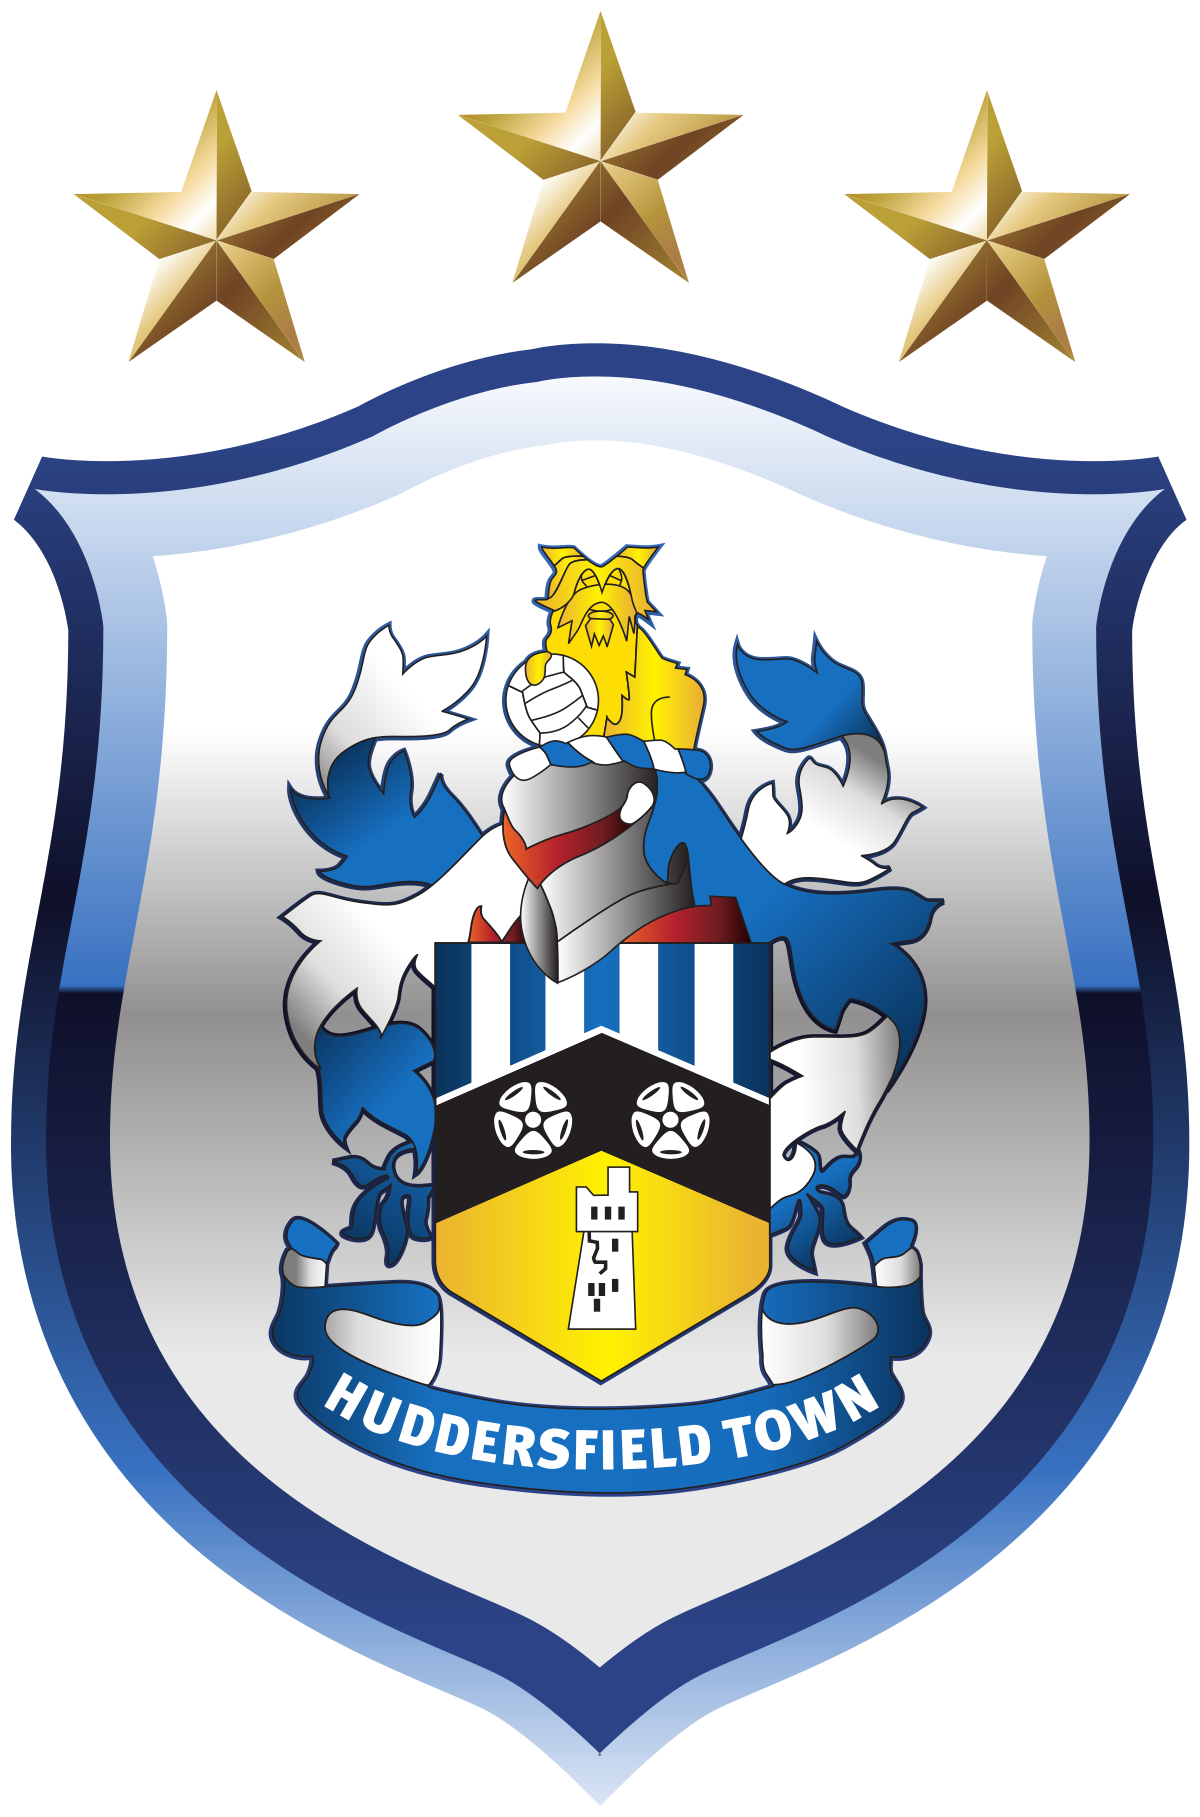 Vereinswappen - Huddersfield Town